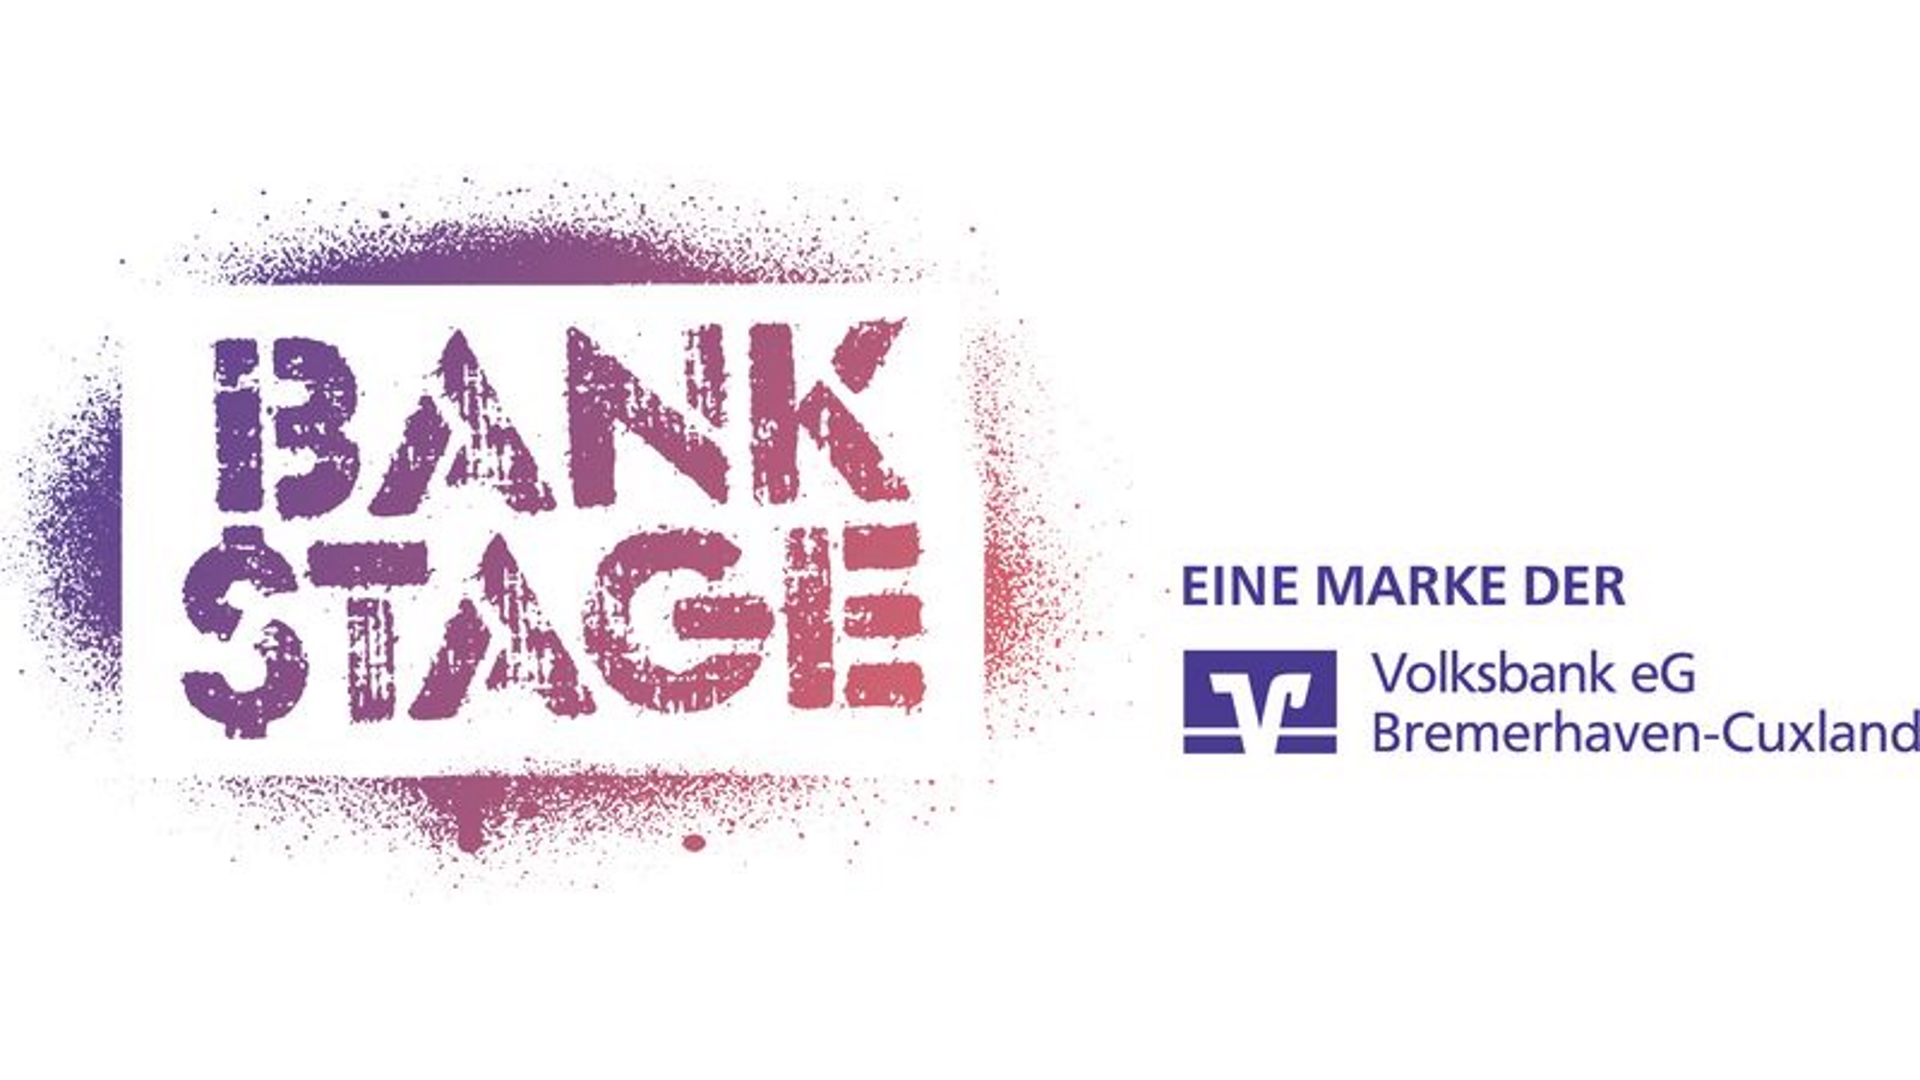 Bankstage - Eine Marke der Volksbank eG Bremerhaven-Cuxland